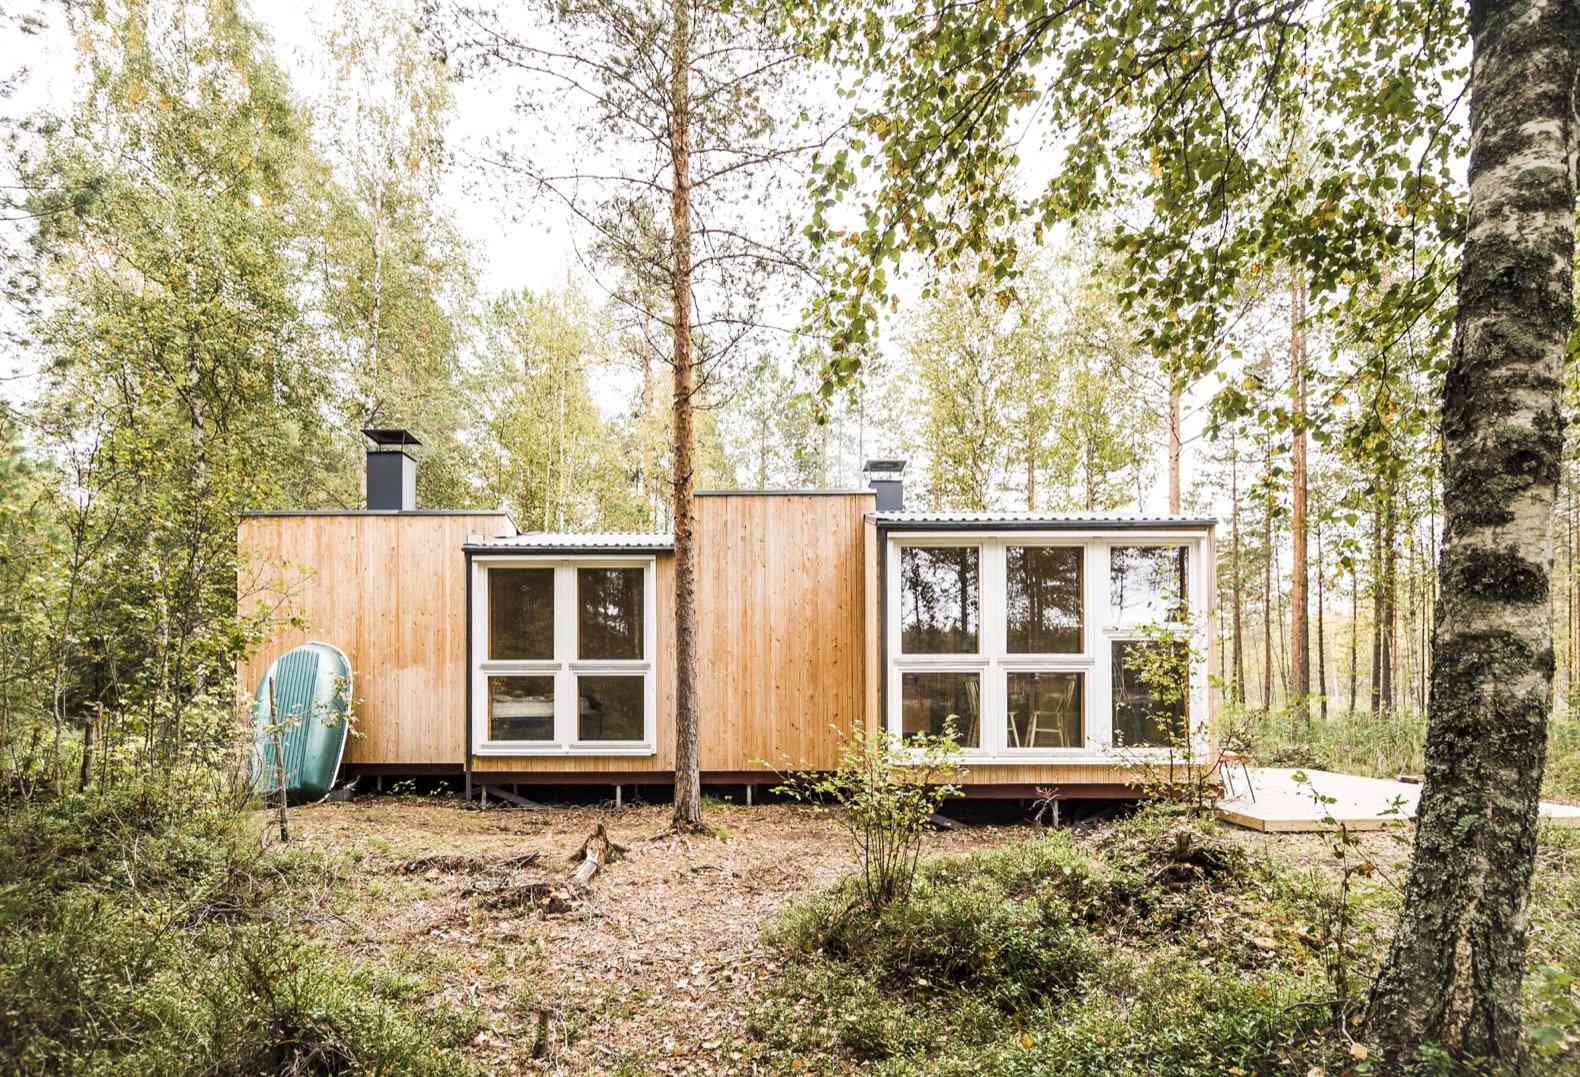 Casa diminuta con grandes ventanas en un bosque